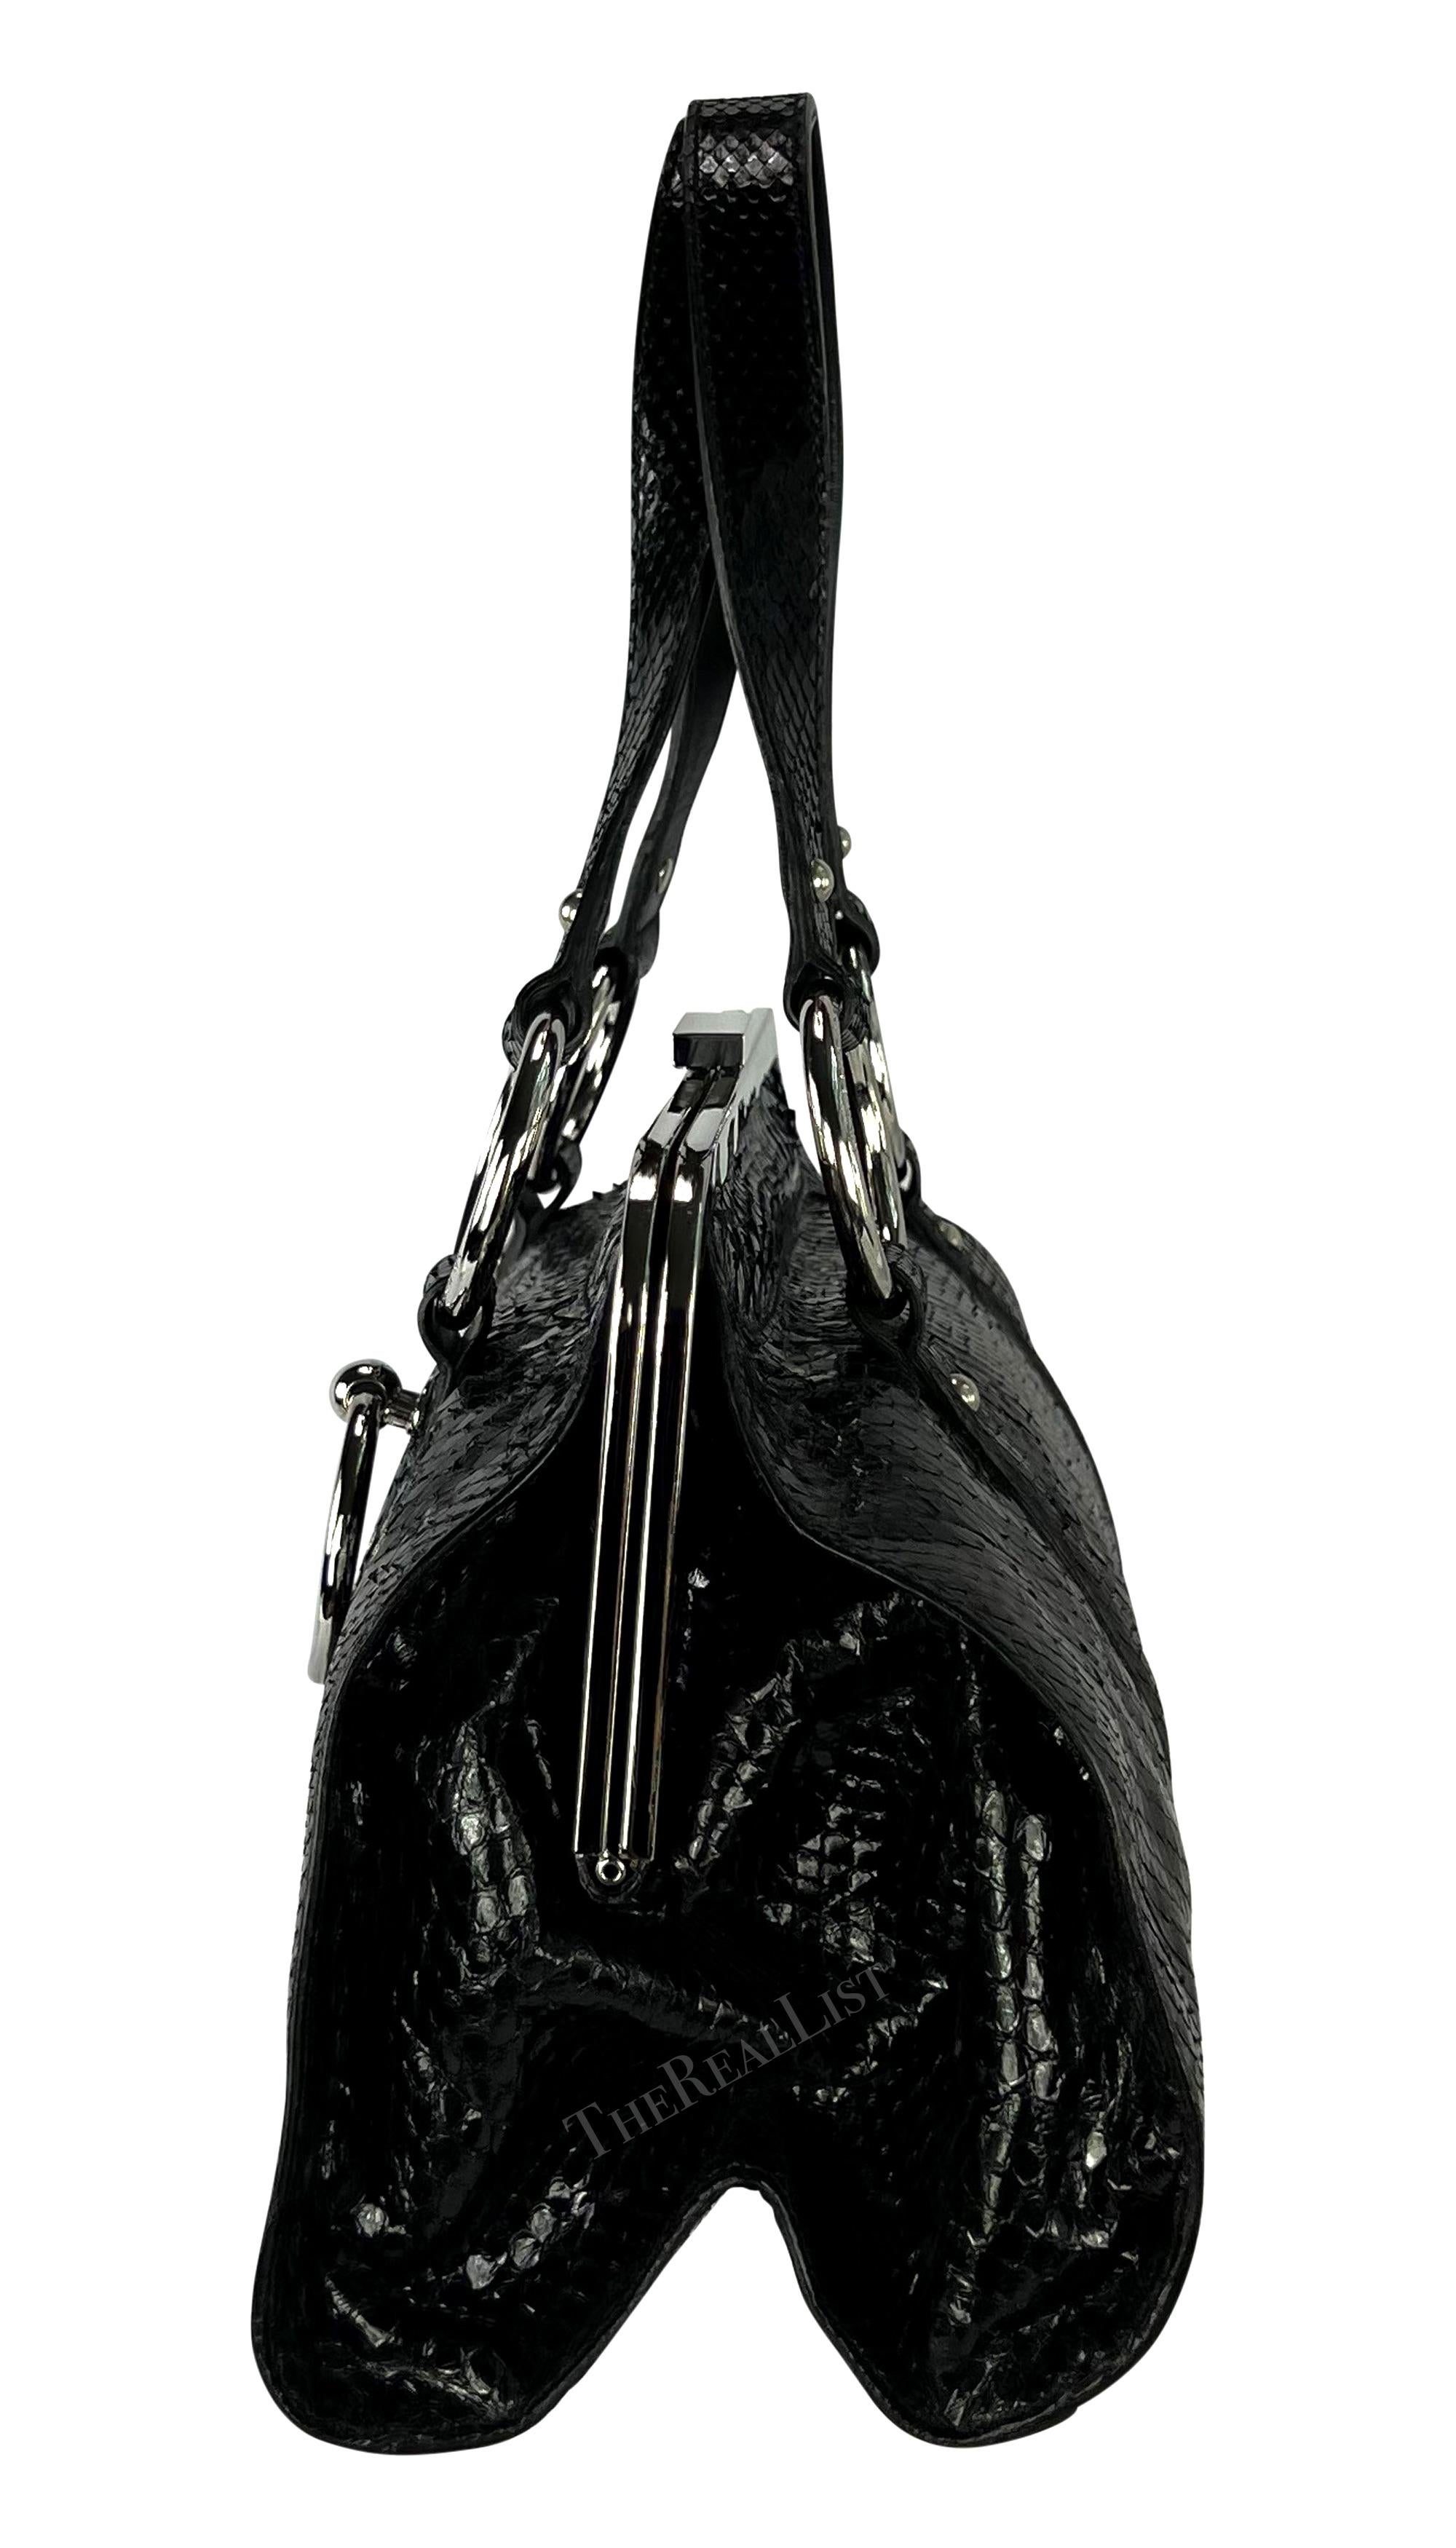 S/S 2003 Dolce & Gabbana Runway Black Python Leather Ring Shoulder Bag For Sale 3